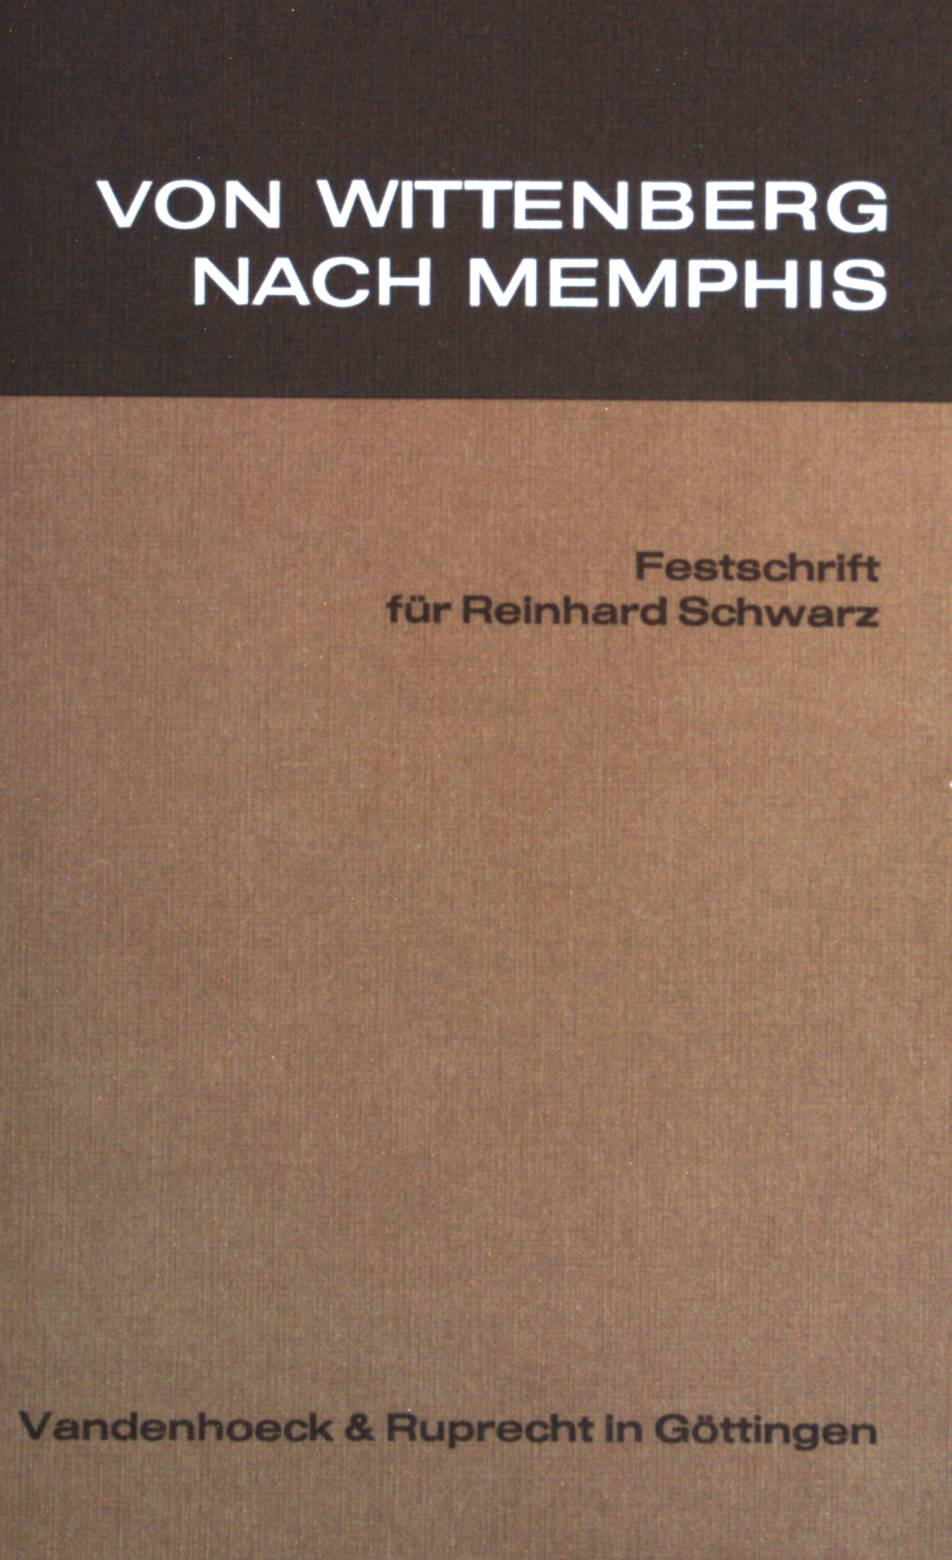 Von Wittenberg nach Memphis : Festschrift für Reinhard Schwarz. - Homolka, Walter und Reinhard Schwarz